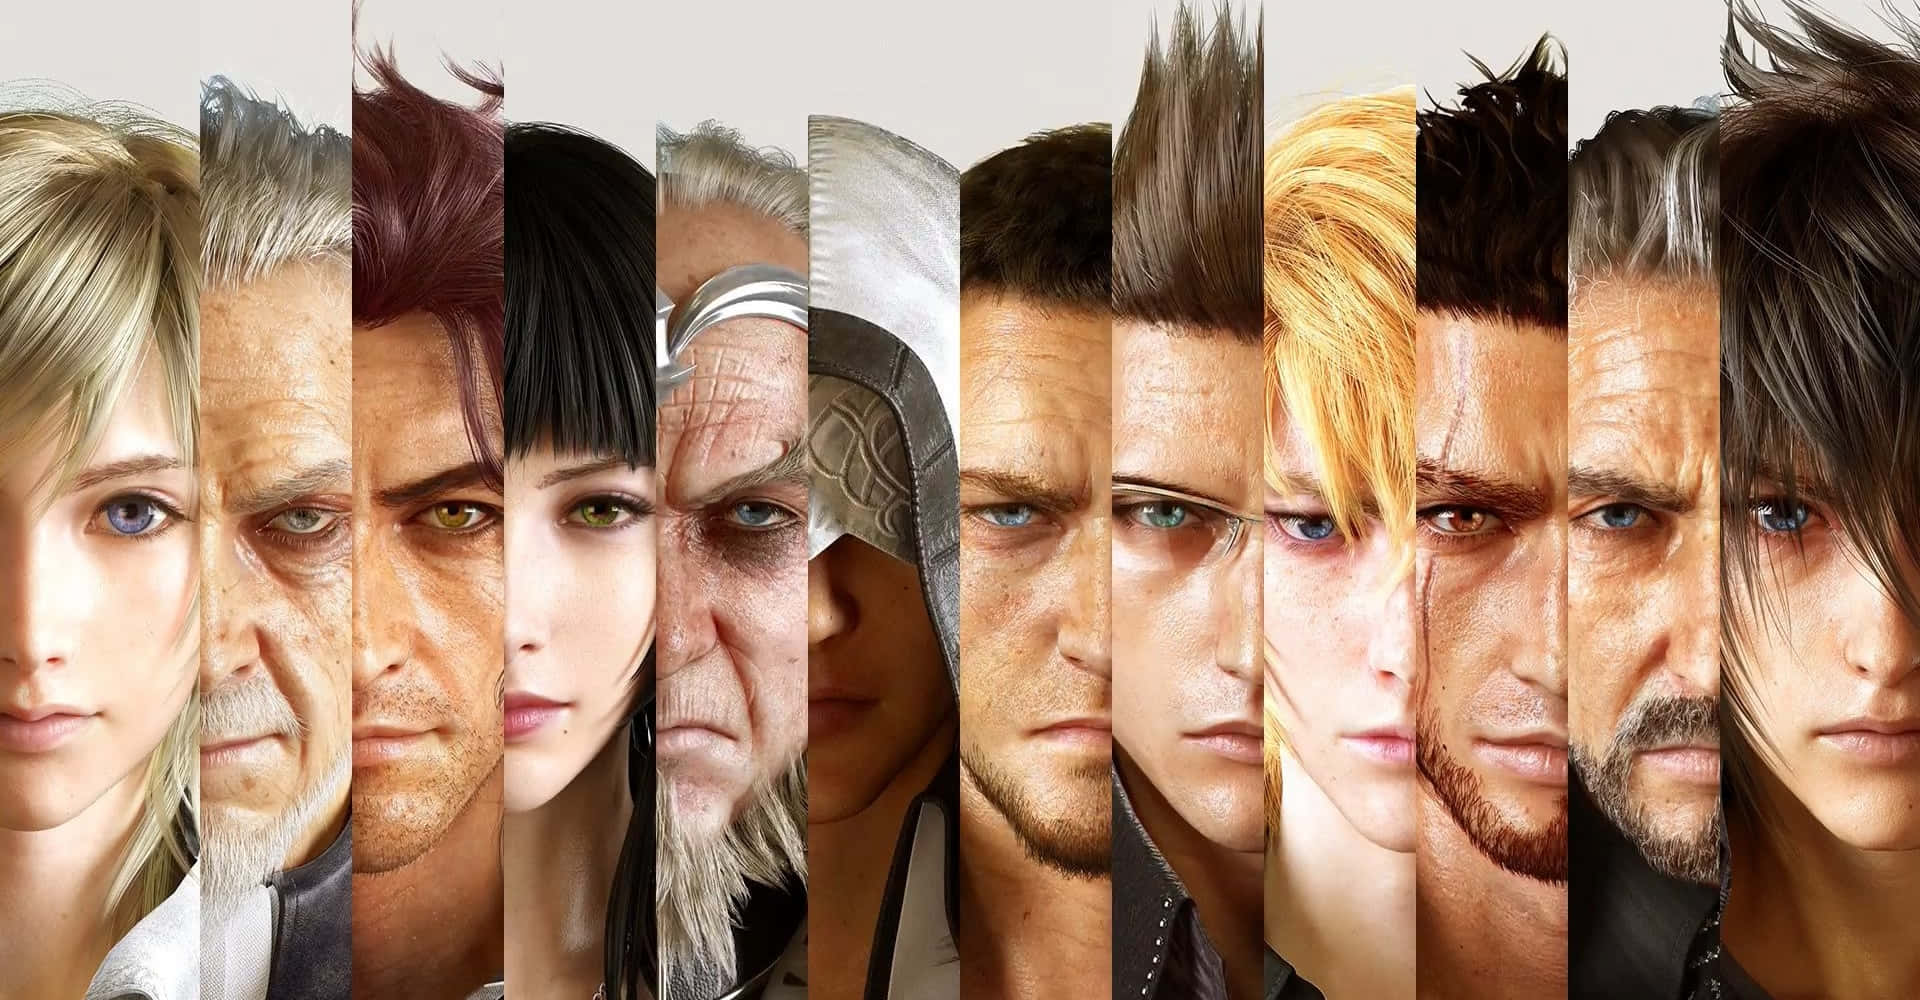 Fondode Pantalla De Collage De Imágenes De Los Personajes De Final Fantasy Xv.